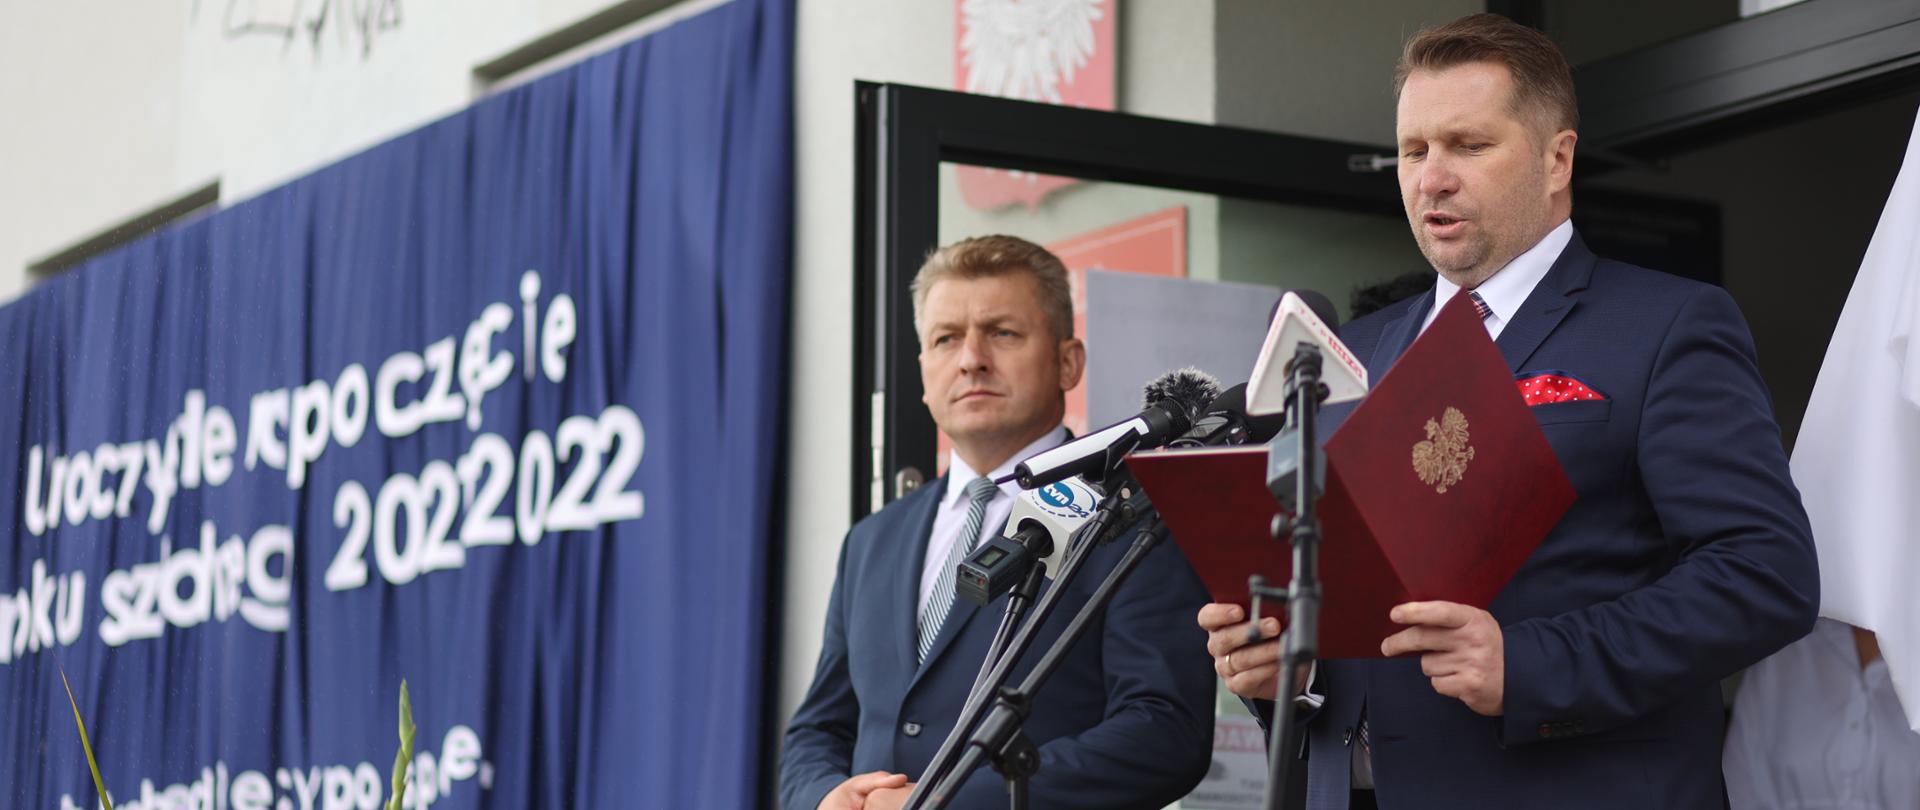 Minister Przemysław Czarnek w Bukowinie odczytuje uchwałę nadającą Szkole Podstawowej w Bukowinie imię Hetmana Jana Zamoyskiego.
